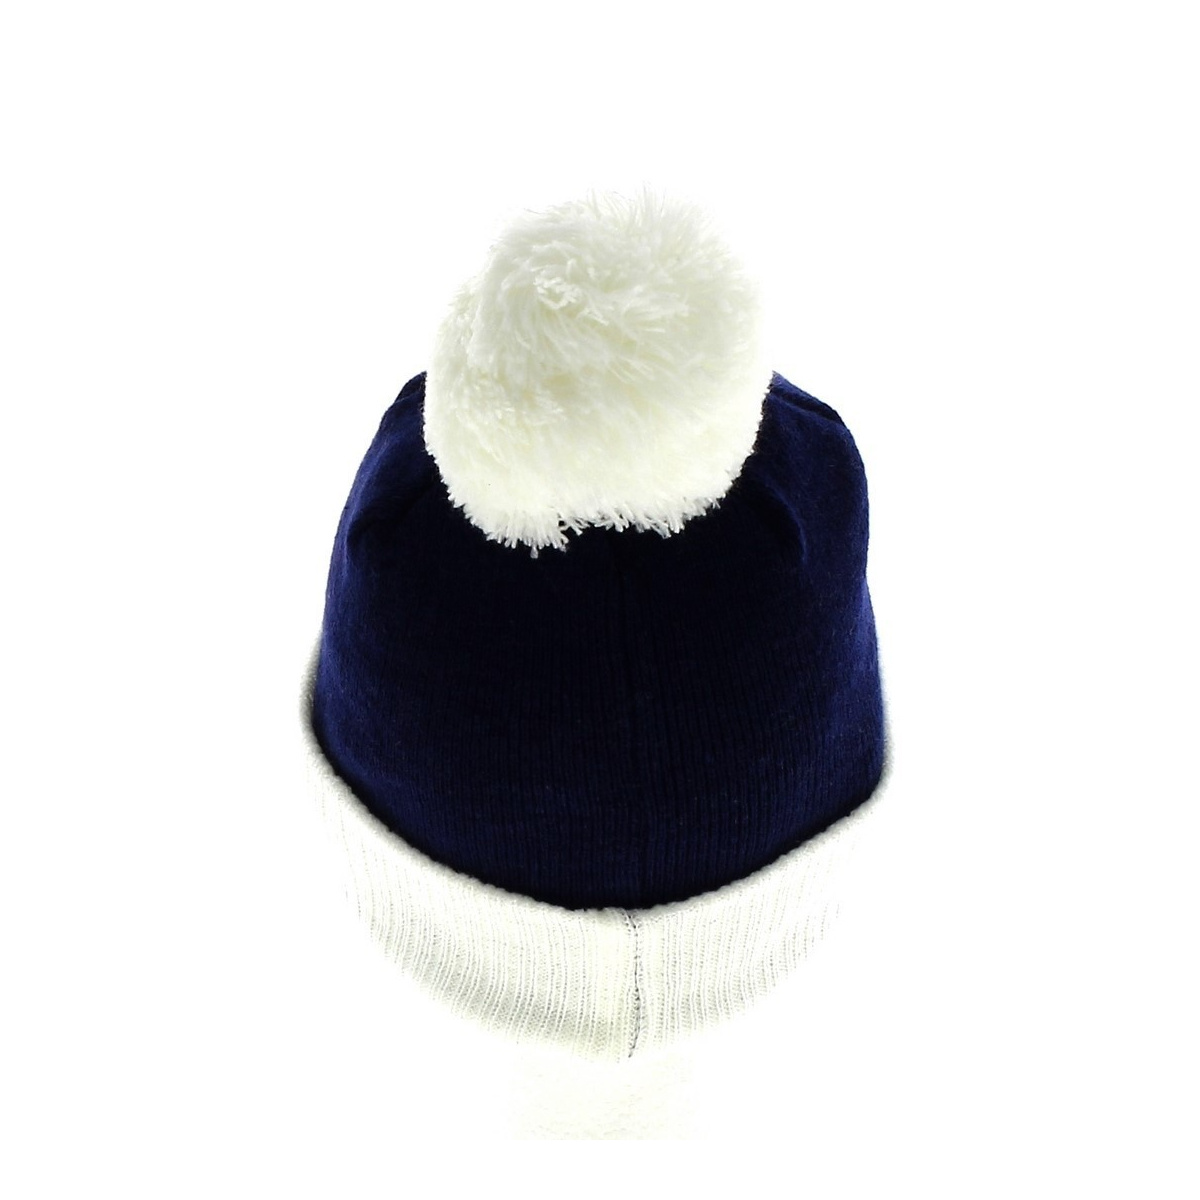 Bonnet enfant à rayure bleue marine et blanche, pompon sur le dessus 1/4 ans  : accessoires-chapeau-et-bonnet par ariellefaitalamaison